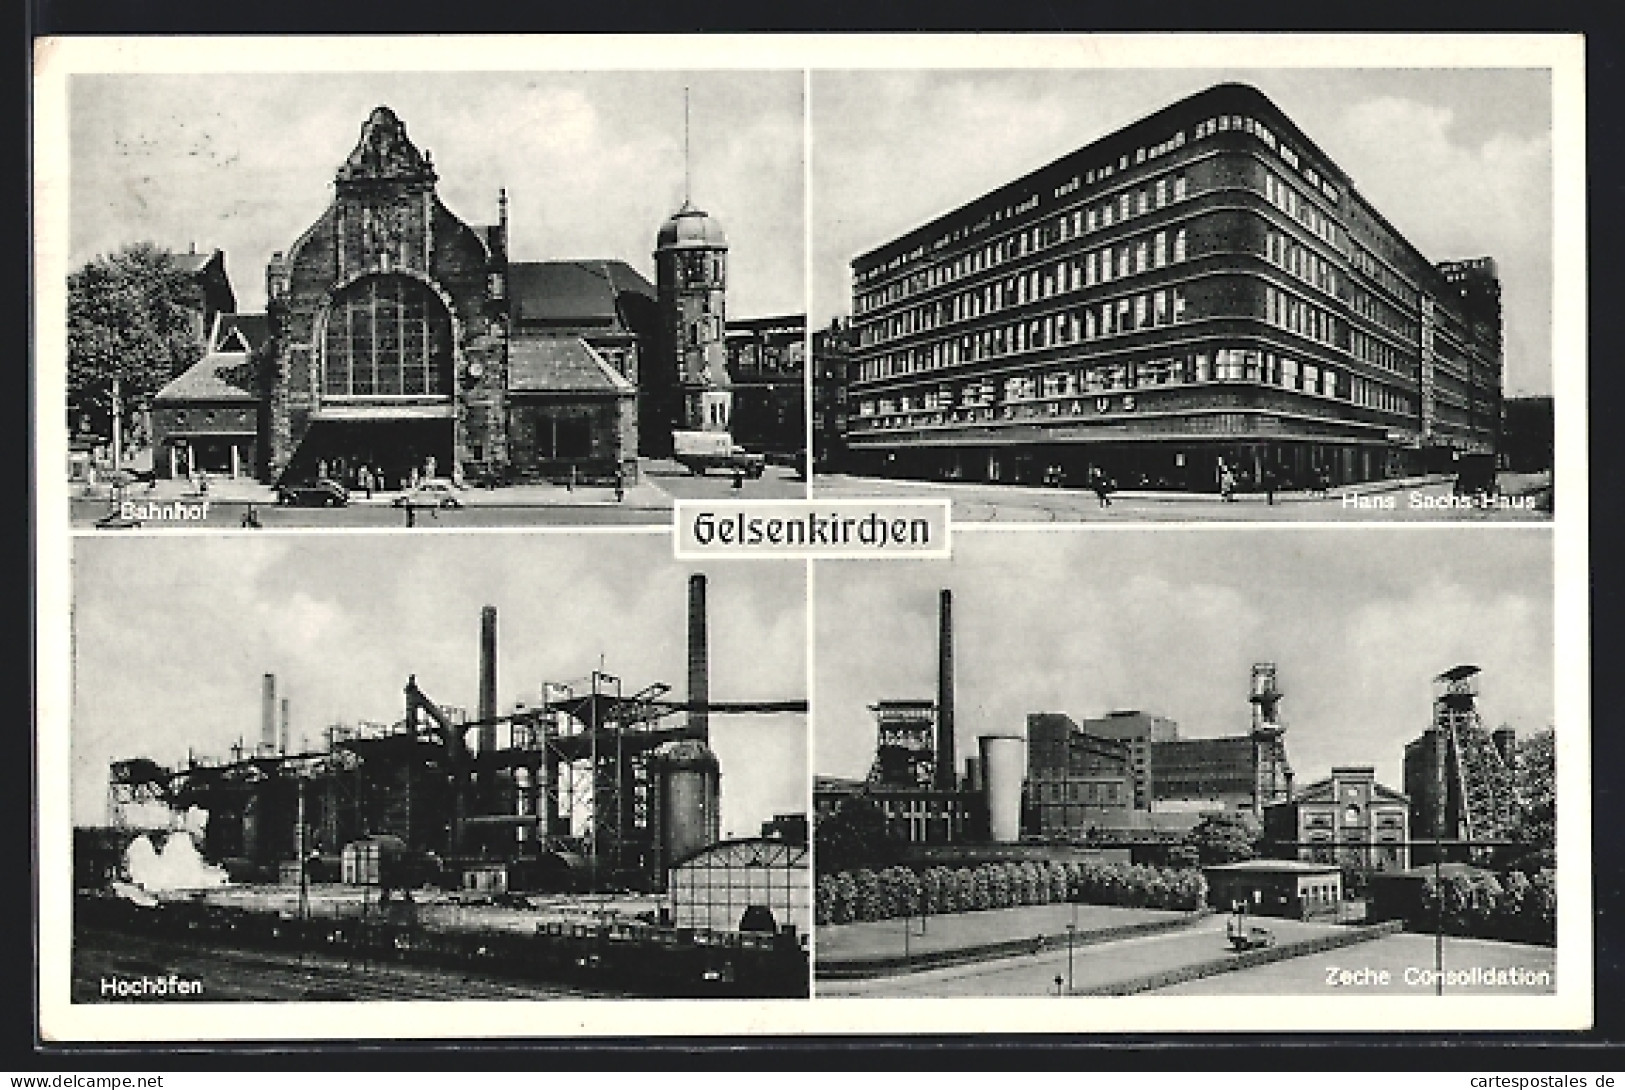 AK Gelsenkirchen, Bahnhof, Hans Sachs-Haus, Hochöfen, Zeche Consolidation  - Mijnen